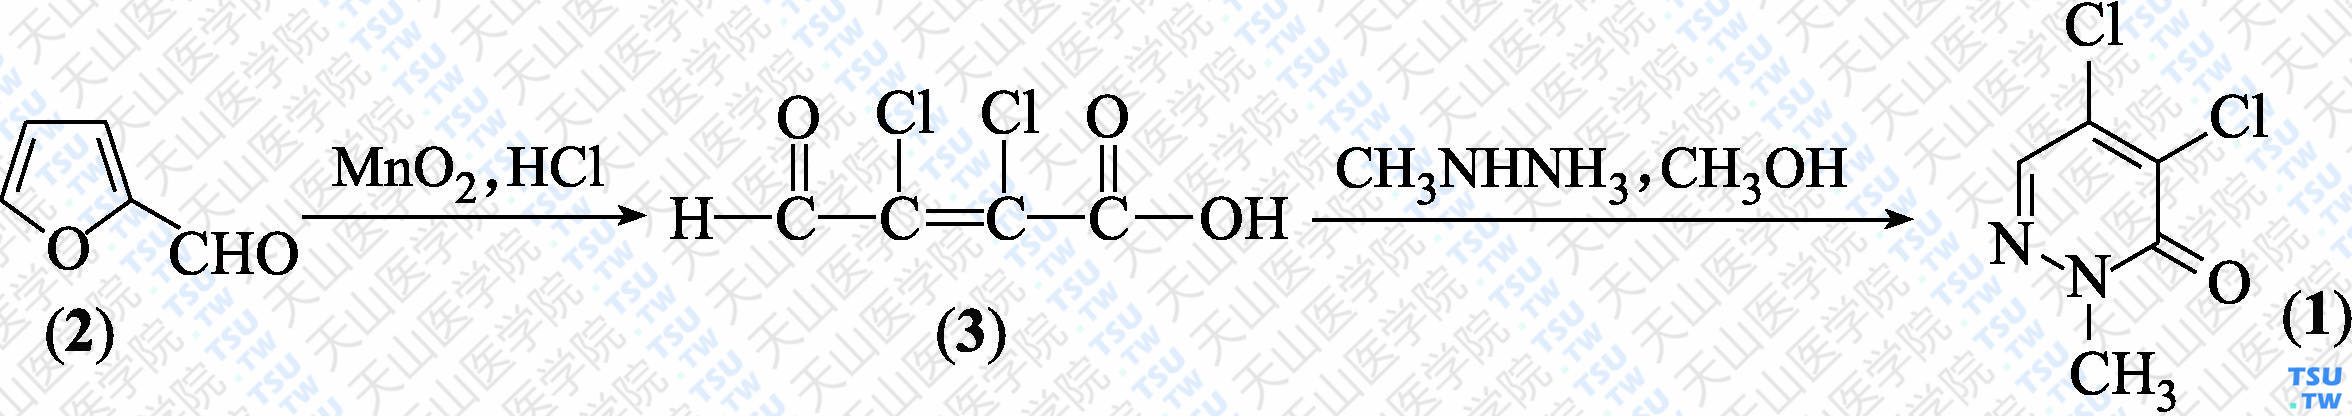 4，5-二氯-2-甲基-3（2<i>H</i>）-哒嗪酮（分子式：C<sub>5</sub>H<sub>4</sub>N<sub>2</sub>Cl<sub>2</sub>O）的合成方法路线及其结构式